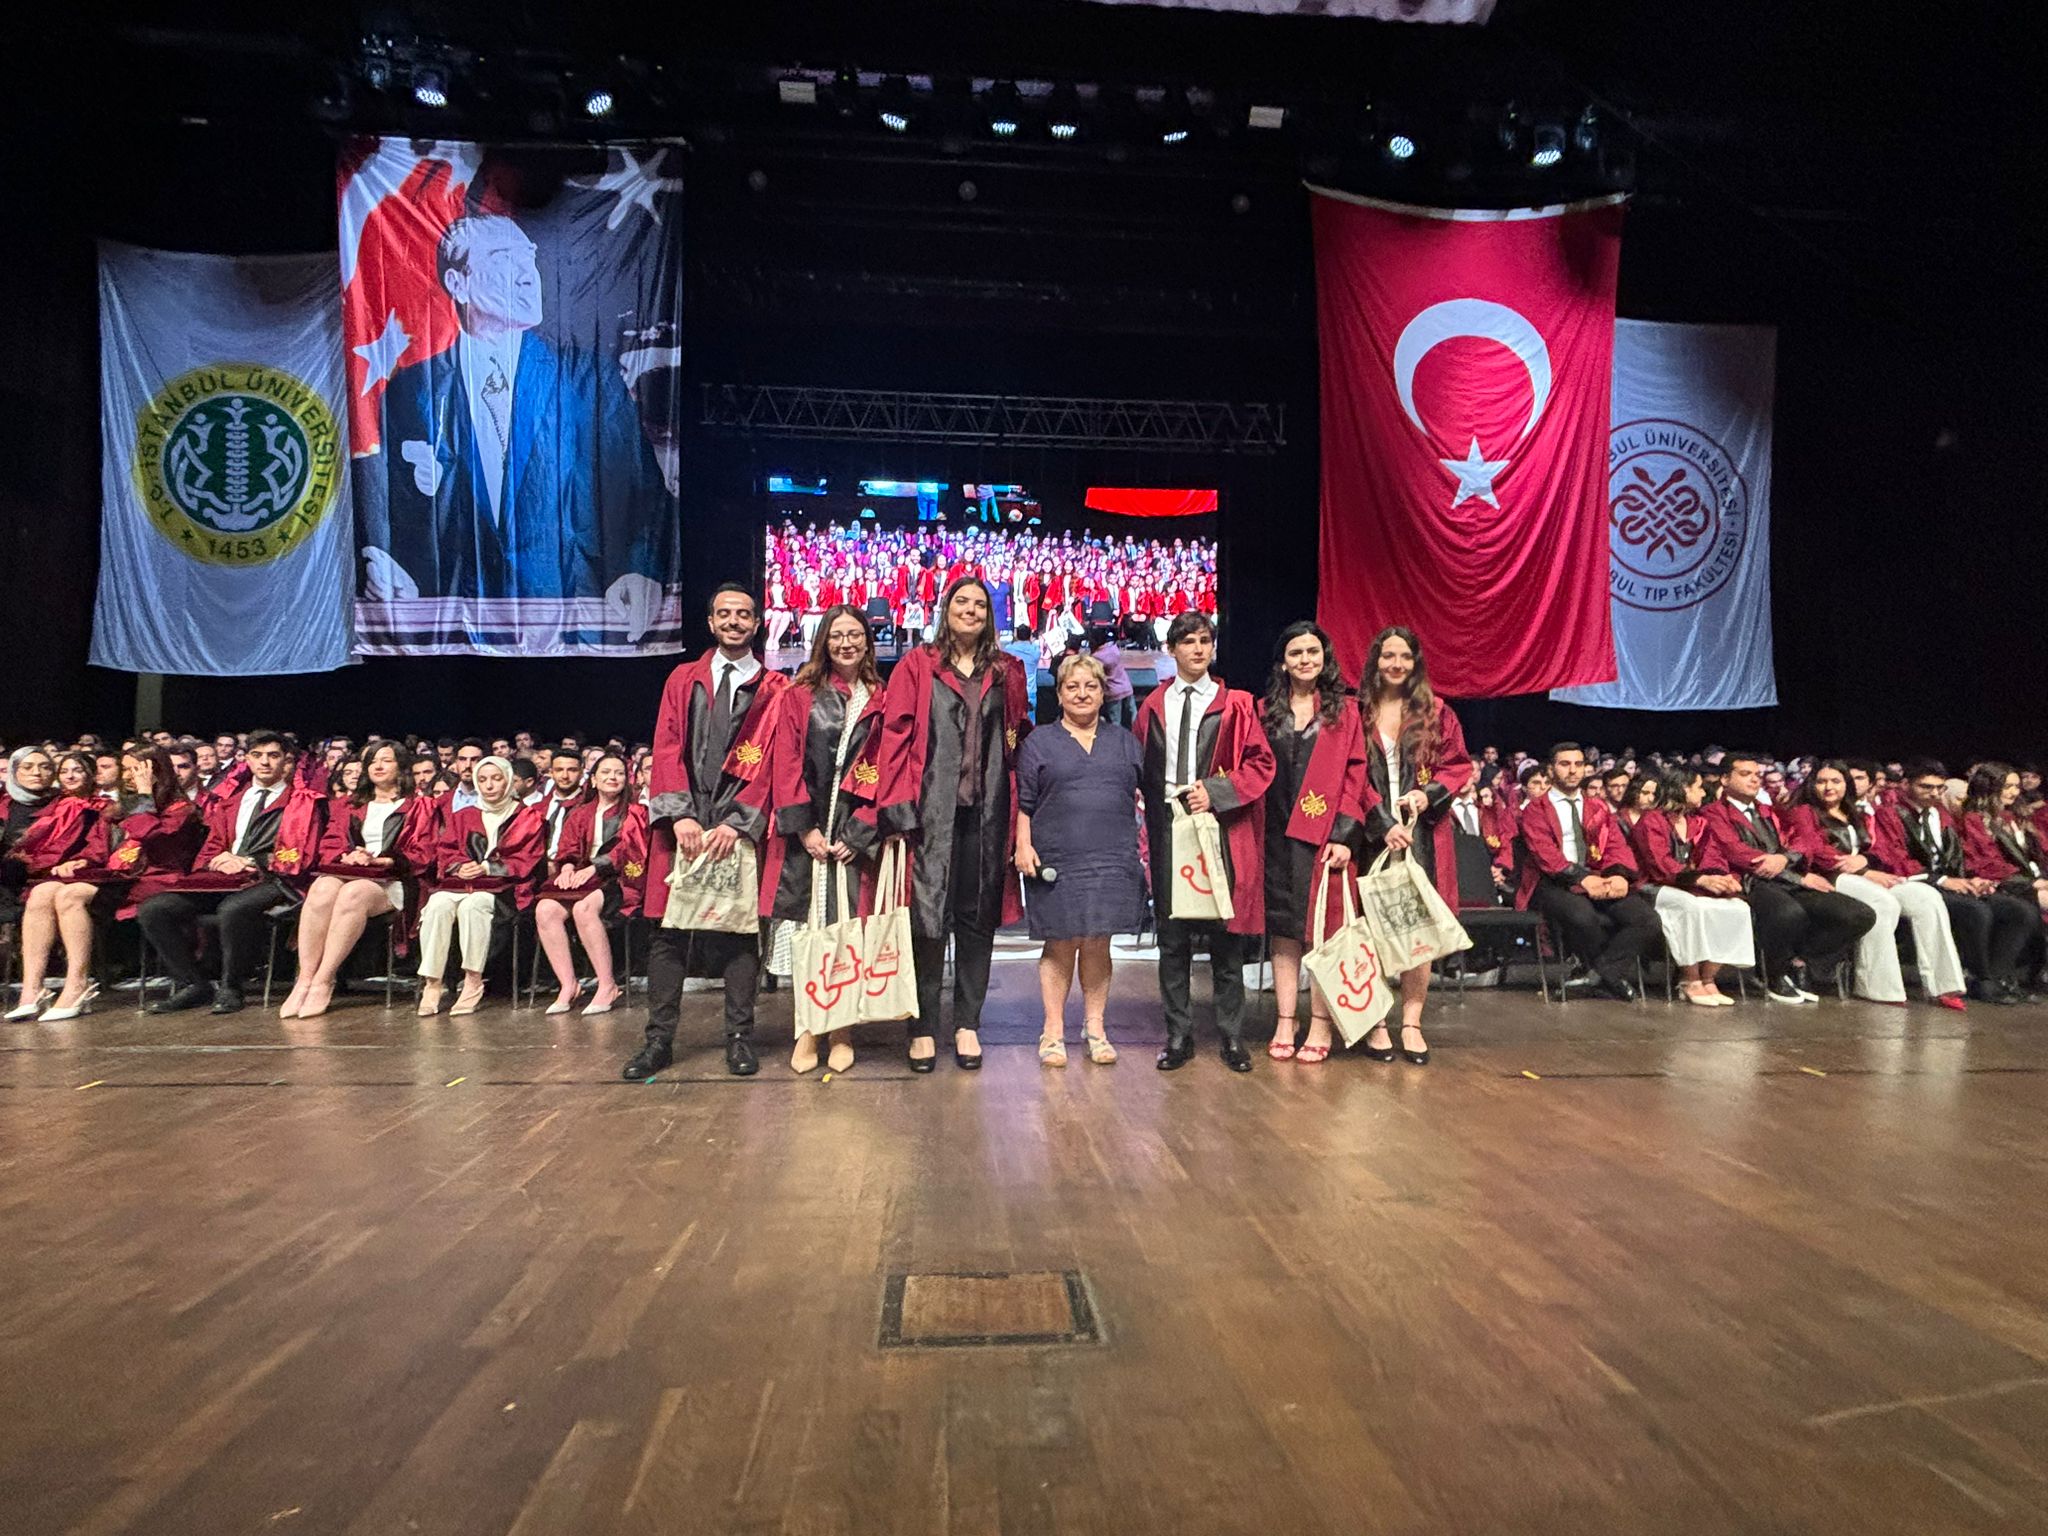 İstanbul Üniversitesi İstanbul Tıp Fakültesi Mezuniyet Töreninde Genç Meslektaşlarımızın Coşkusunu ve Mutluluğunu Paylaştık